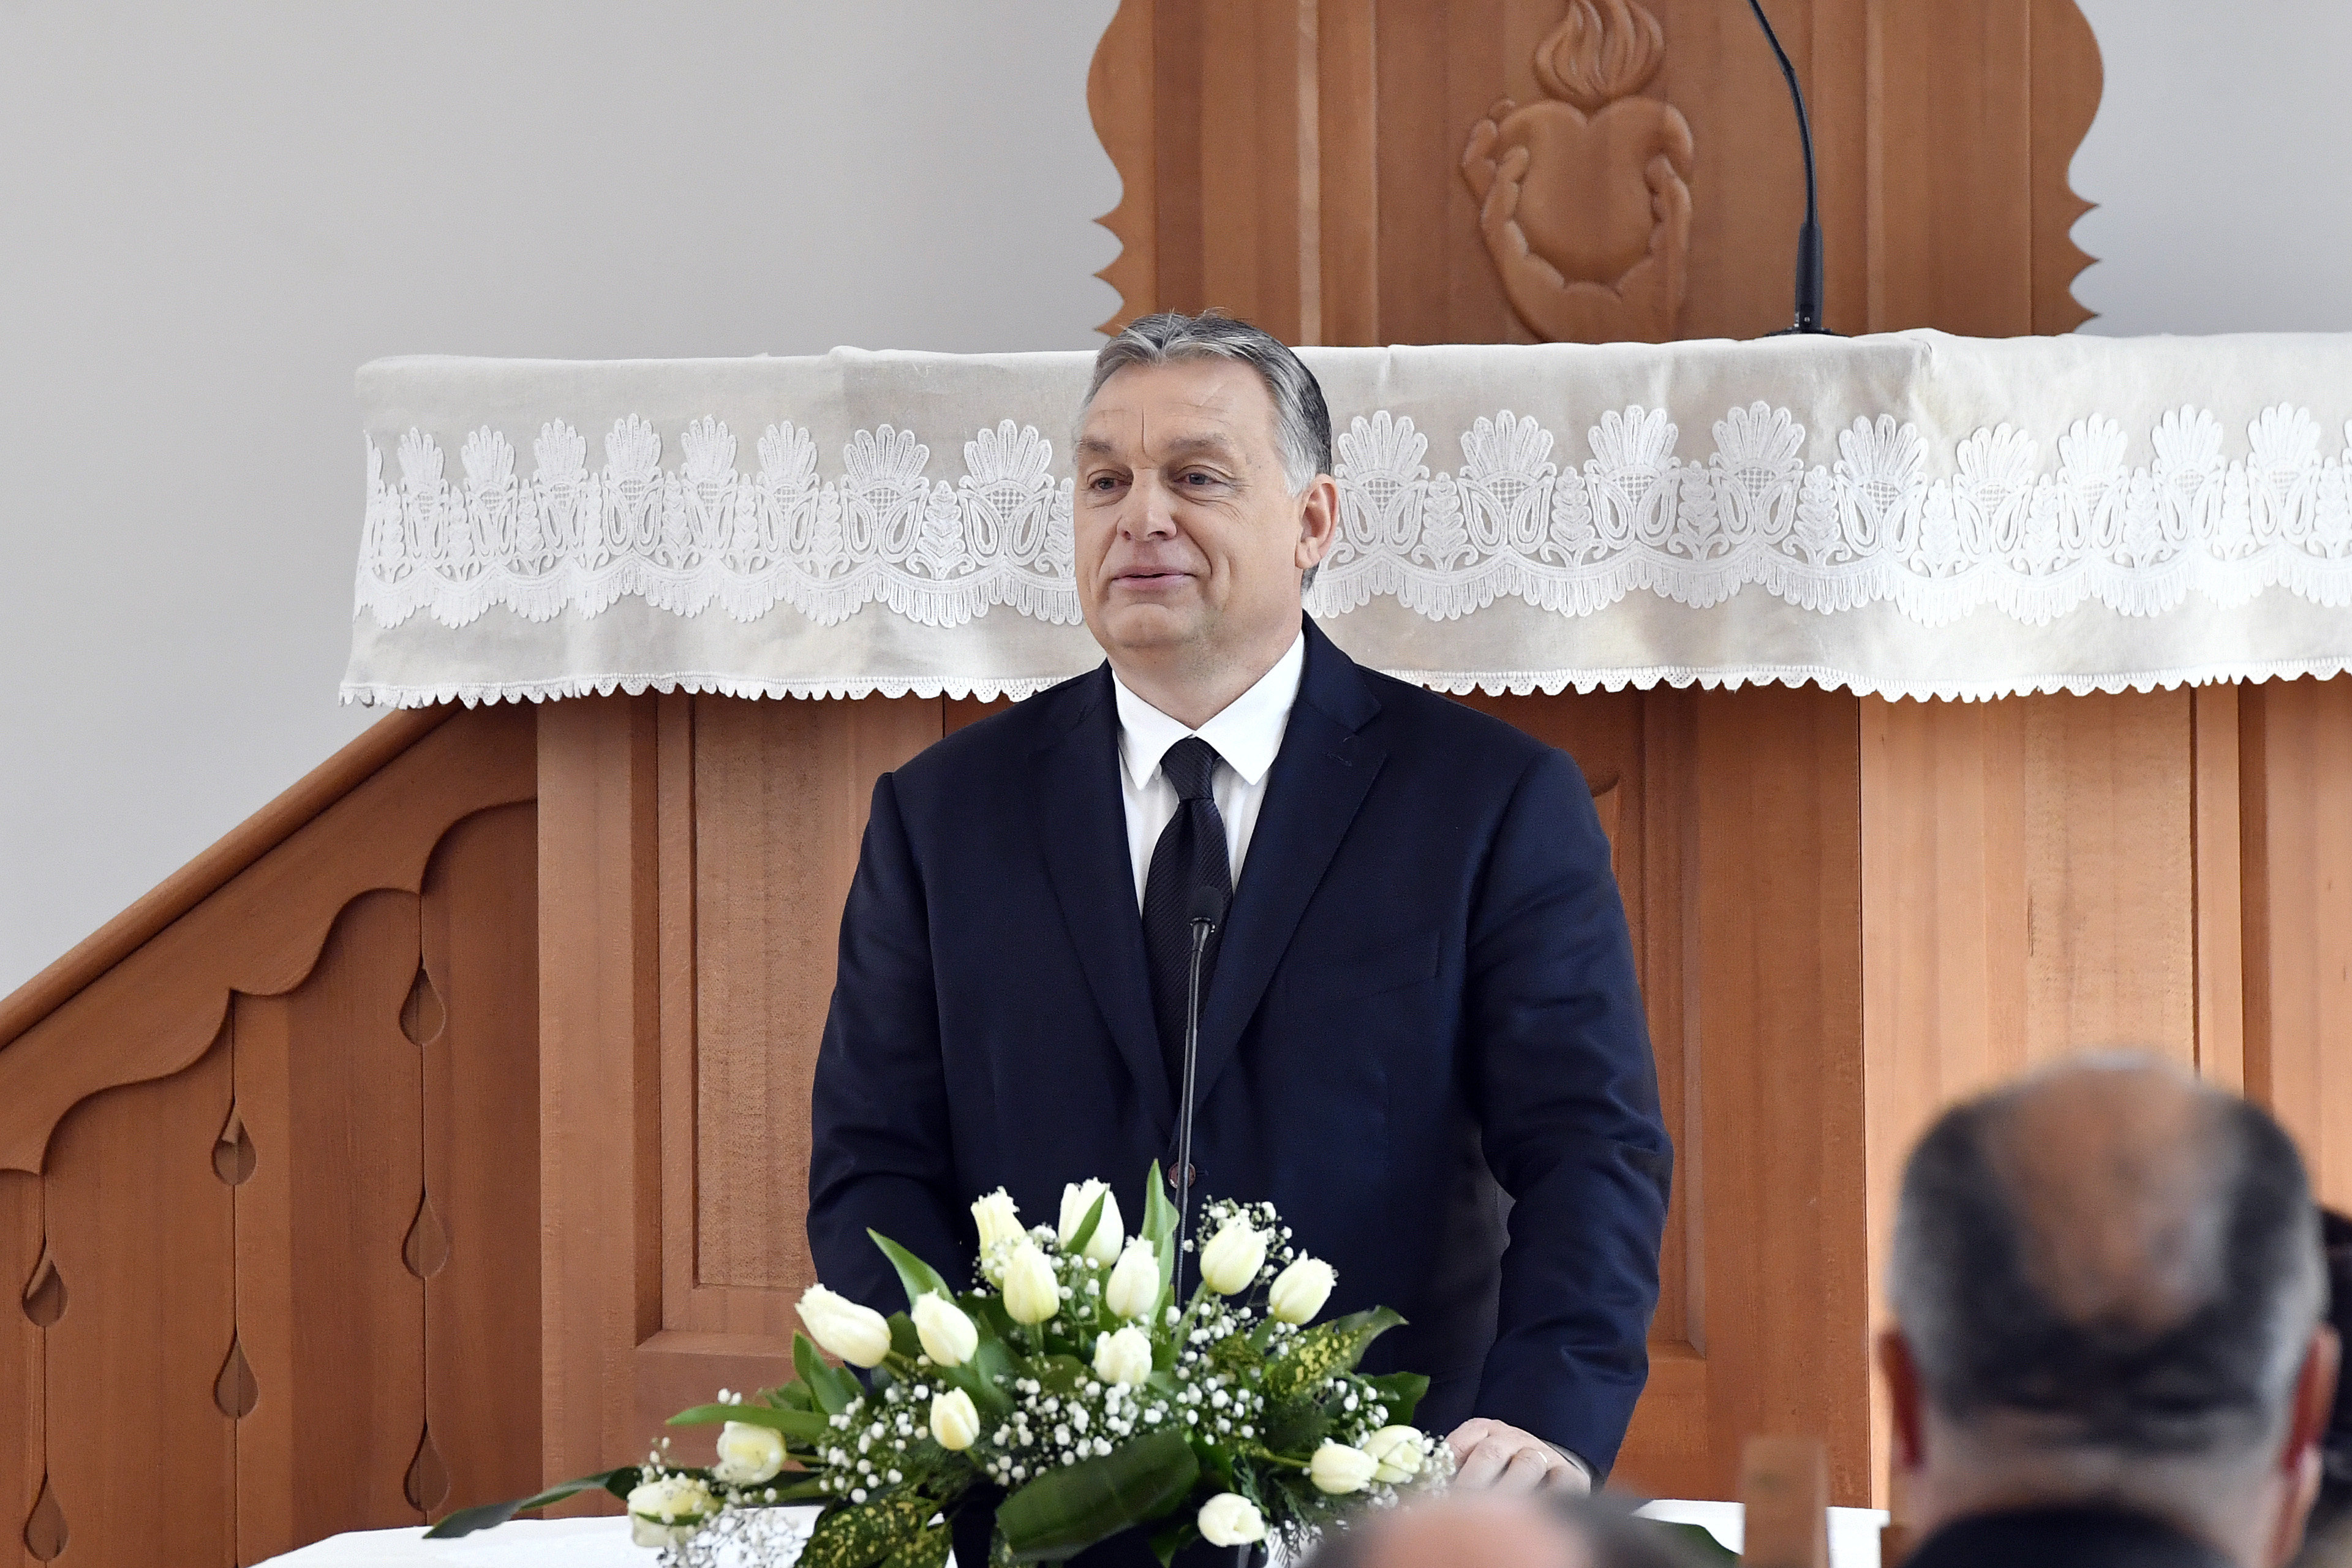 Református templom szószékéről kampányolt Orbán